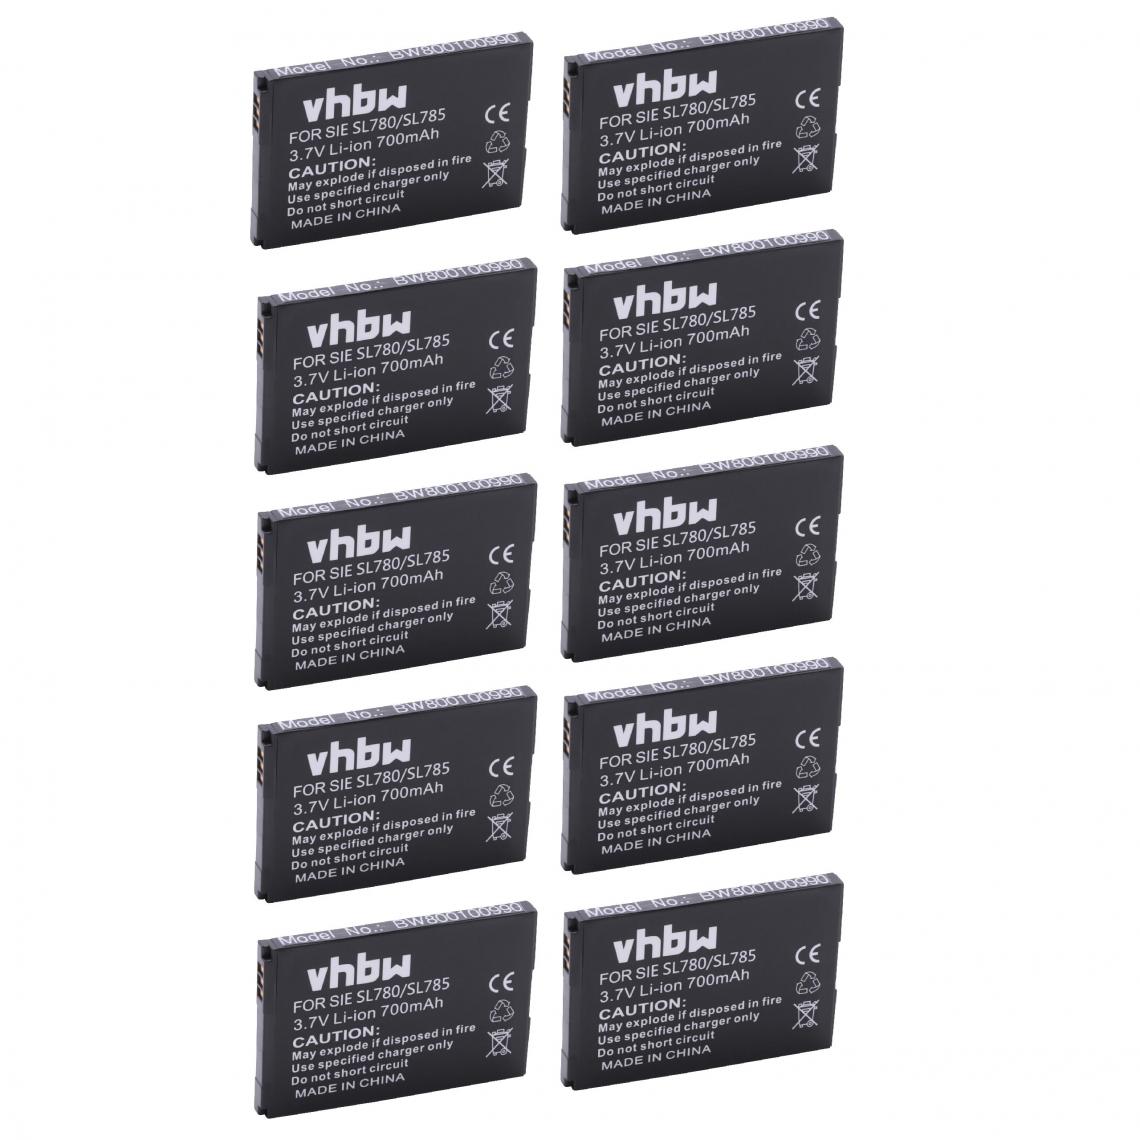 Vhbw - vhbw 10x Batteries remplacement pour Siemens Gigaset V30145-K1310K-X444, V30145-K1310-X445 pour téléphone fixe sans fil (700mAh, 3,7V, Li-ion) - Batterie téléphone